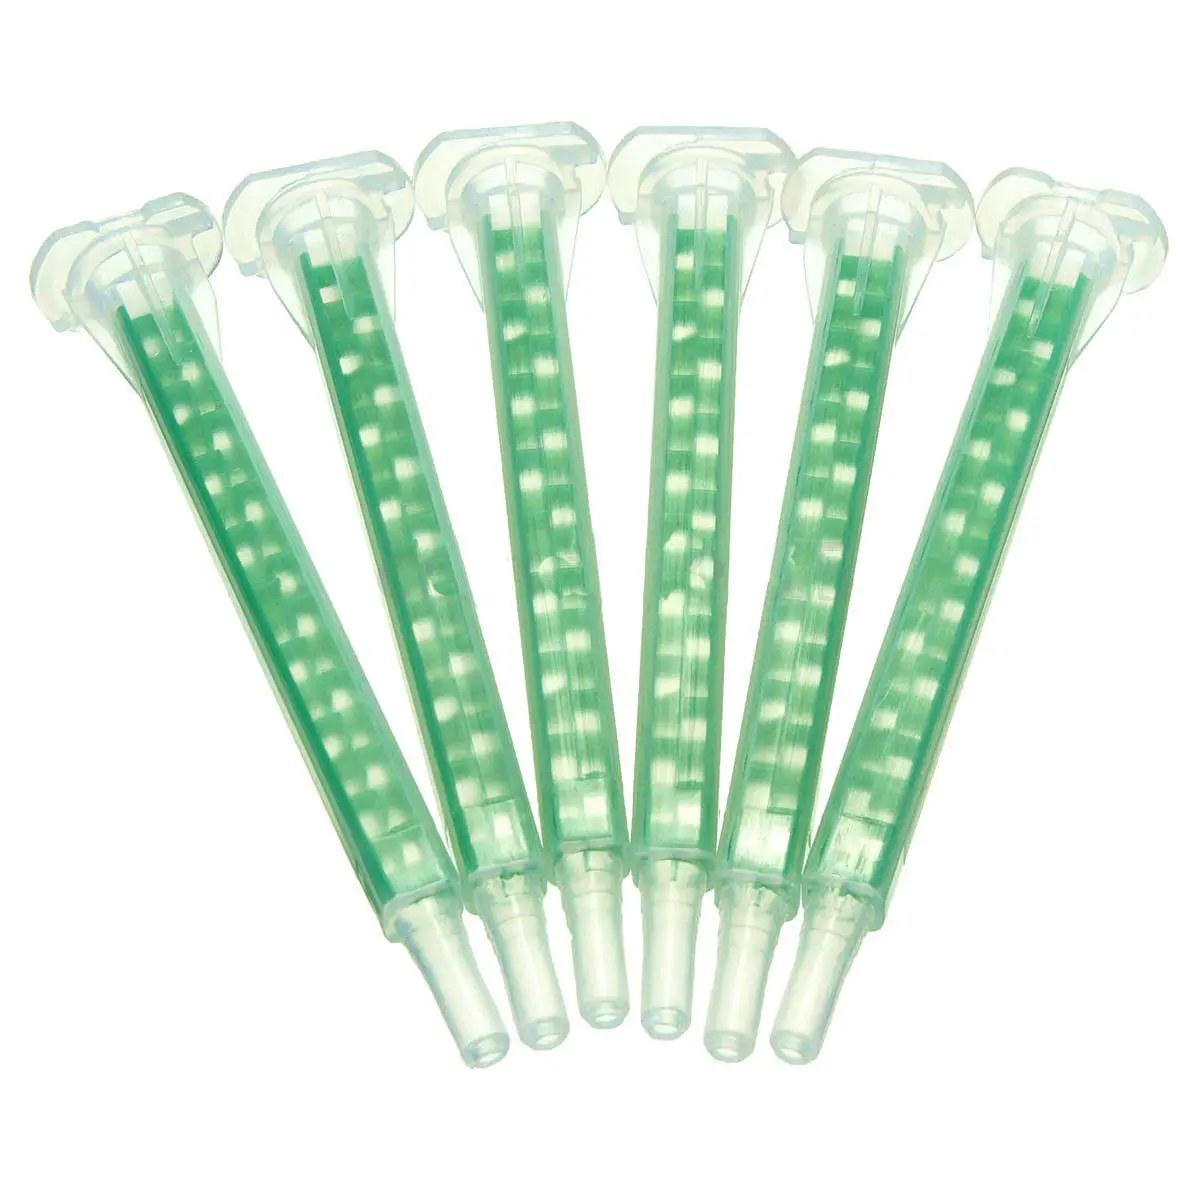 

50 X Пластик F6-16 зеленый AB Клей смола статическая рот смешивания 16 ~ сопла трубки 83 см